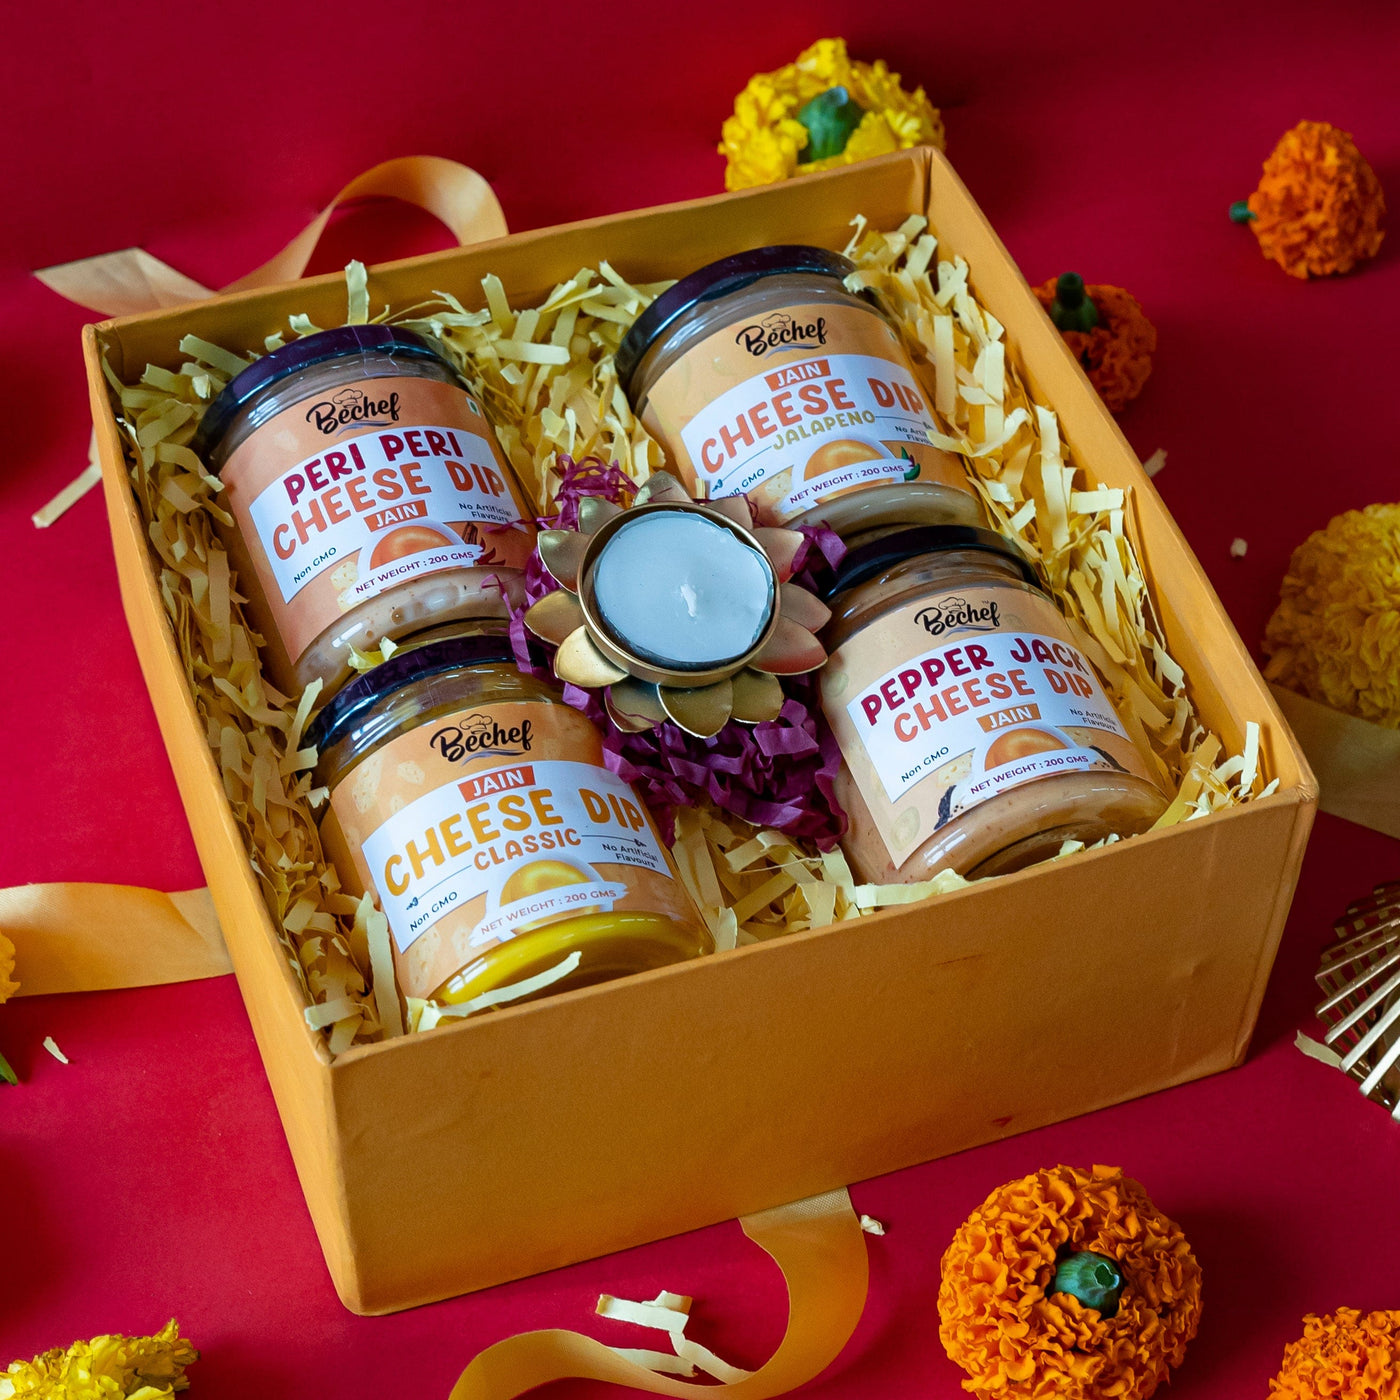 Diwali Jain Dips Gift Hamper : Premium Gifting for Diwali - Bechef - Gourmet Pantry Essentials